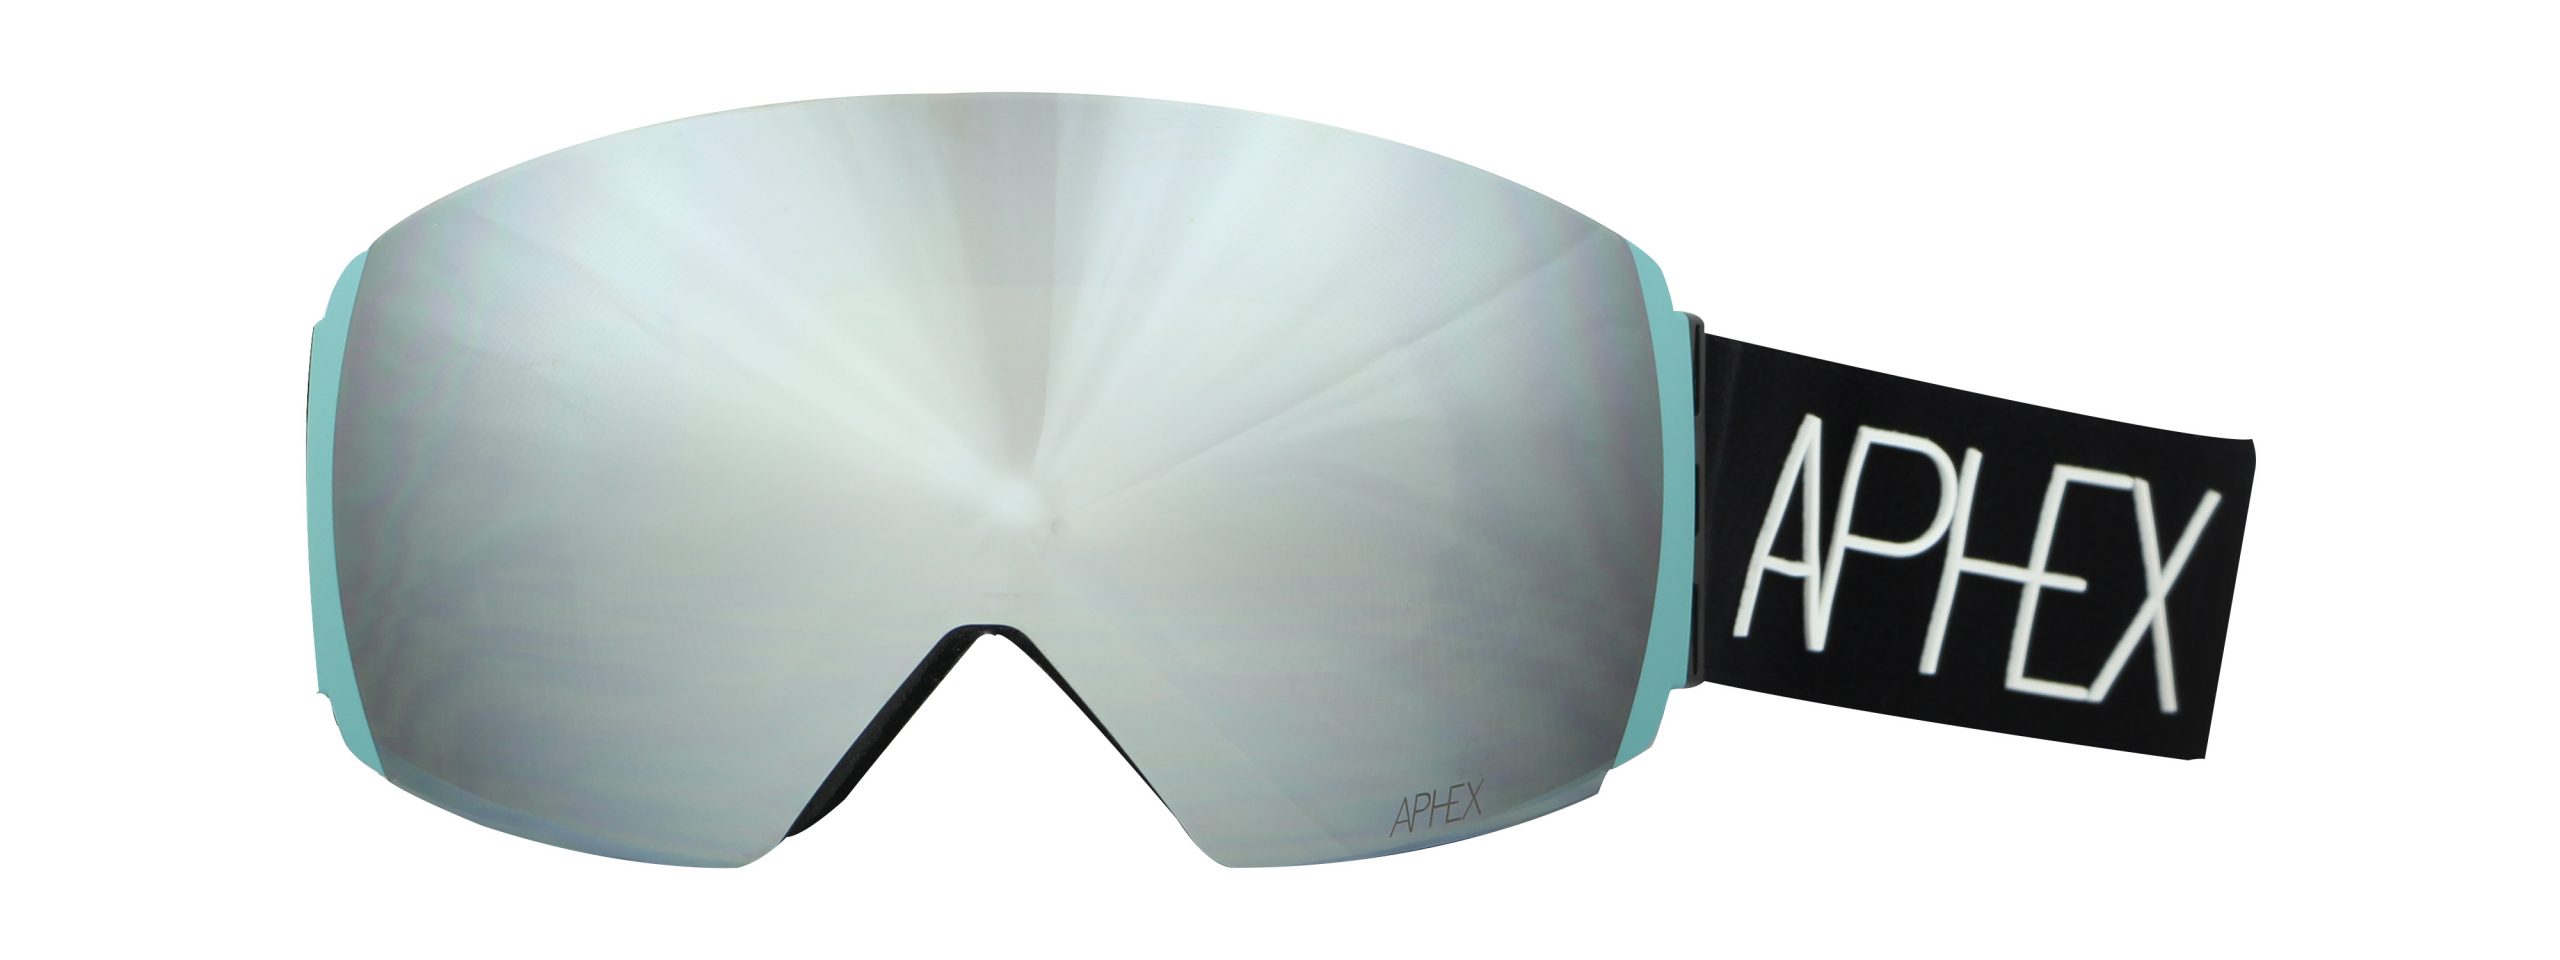 Aphex FW20/21 Goggles